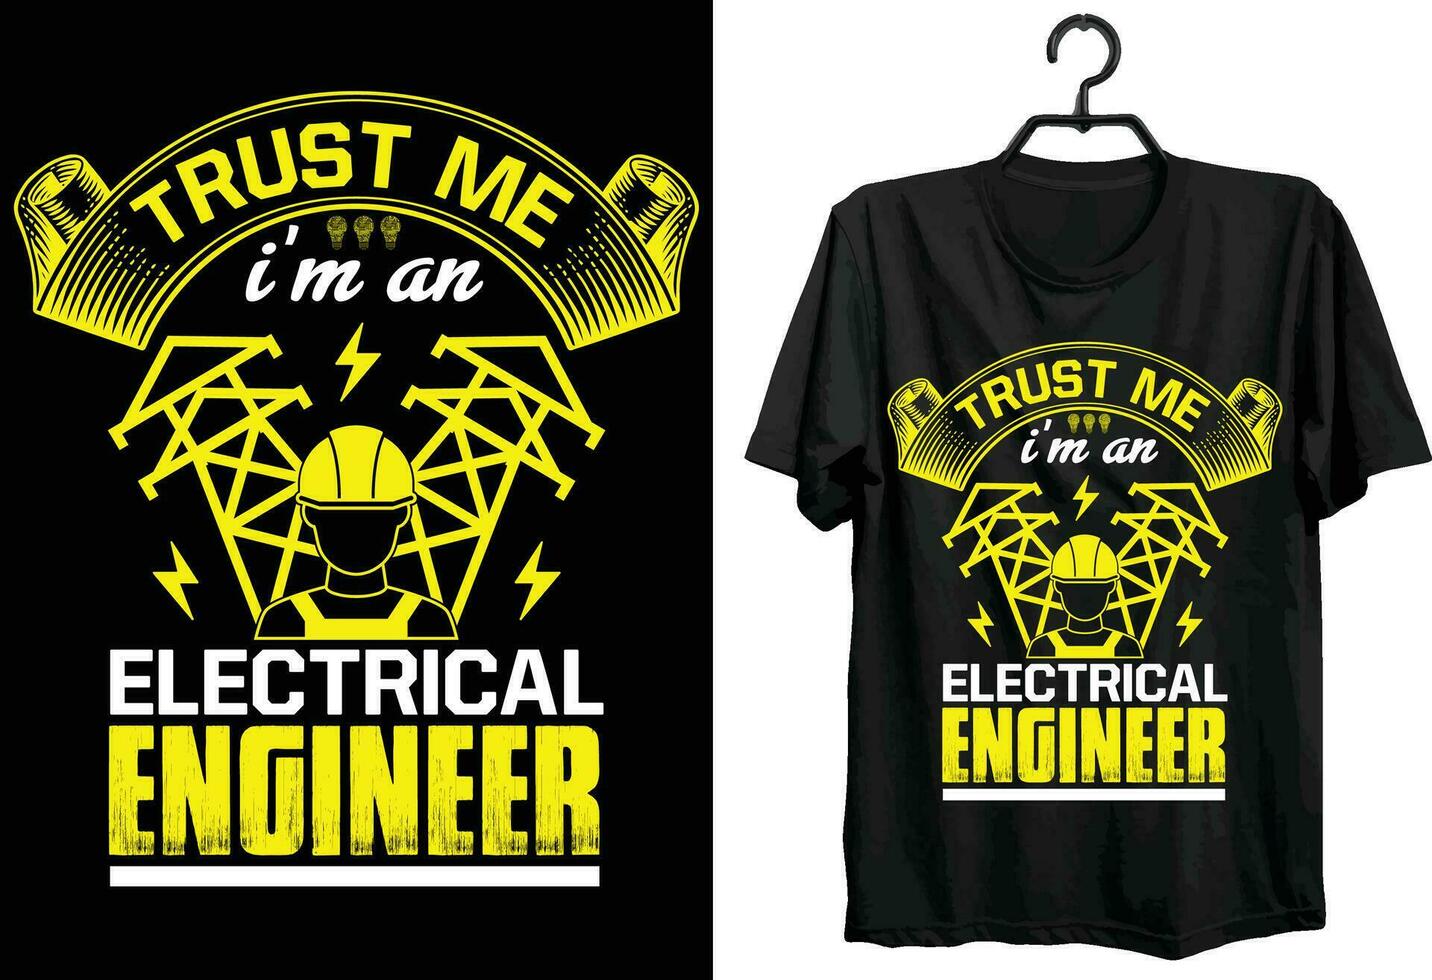 vertrouwen me ik ben een elektrisch ingenieur. elektrisch ingenieur t overhemd ontwerp. grappig geschenk item elektrisch ingenieur t overhemd ontwerp voor elektricien. vector